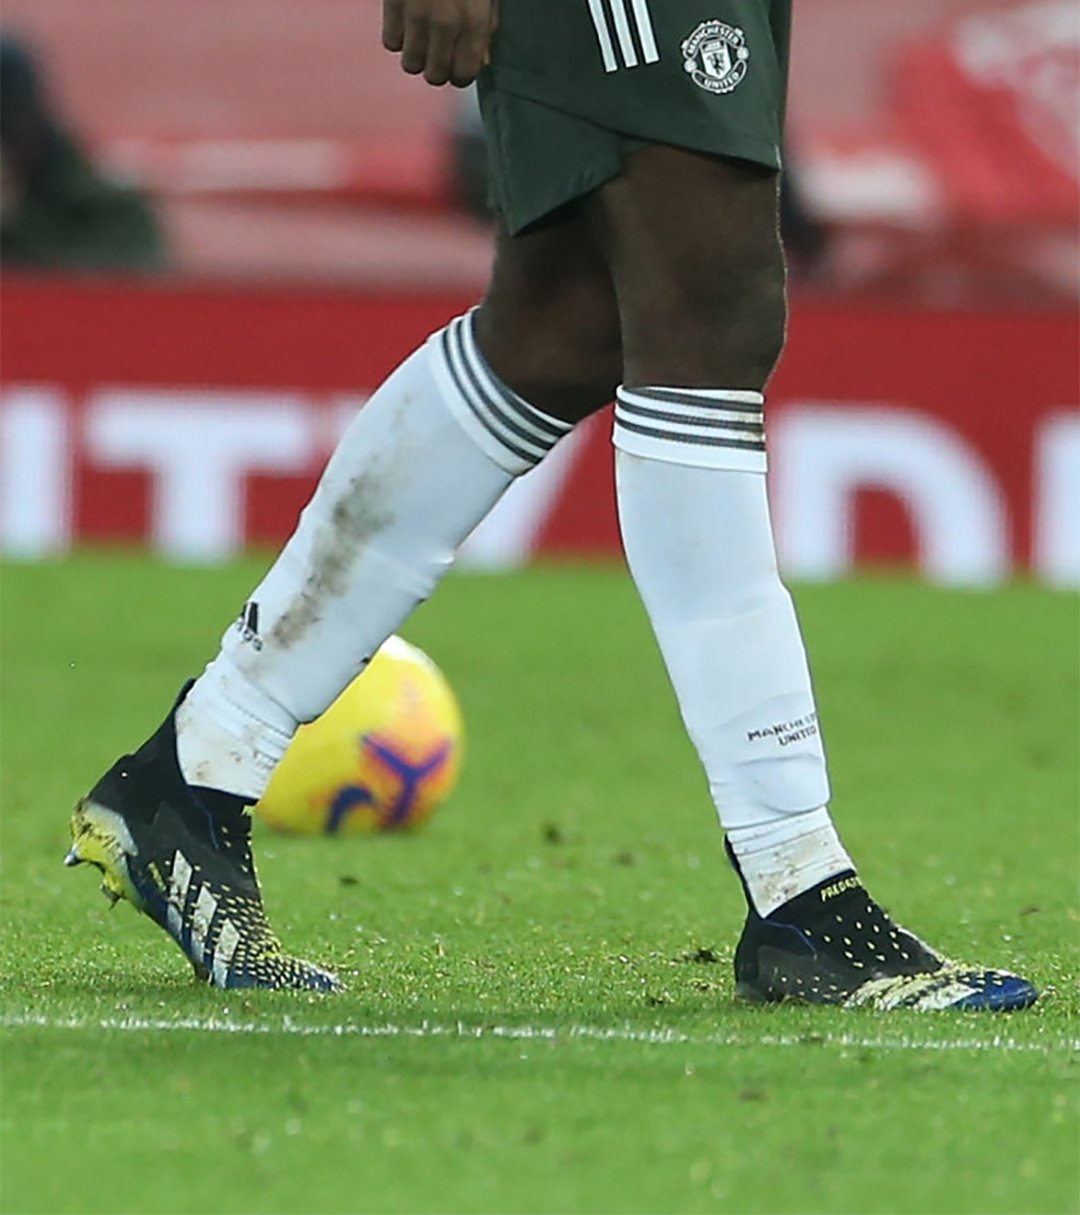 Marca de Gol Twitter: "⚫️⚽️ Paul Pogba (@paulpogba) estrenando los nuevos botines adidas Predator Freak en el encuentro entre y Manchester United. su lanzamiento al público a brevedad.